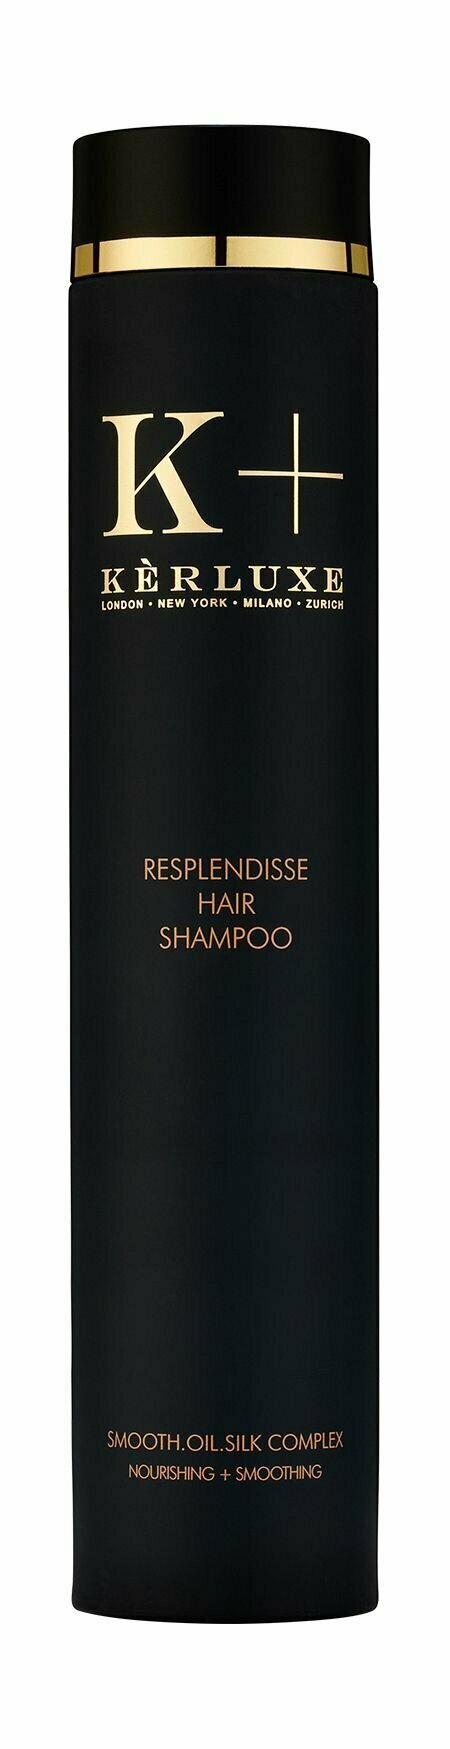 Шампунь для кудрявых и непослушных волос с маслом копайбы / Kerluxe Resplendisse Hair Shampoo